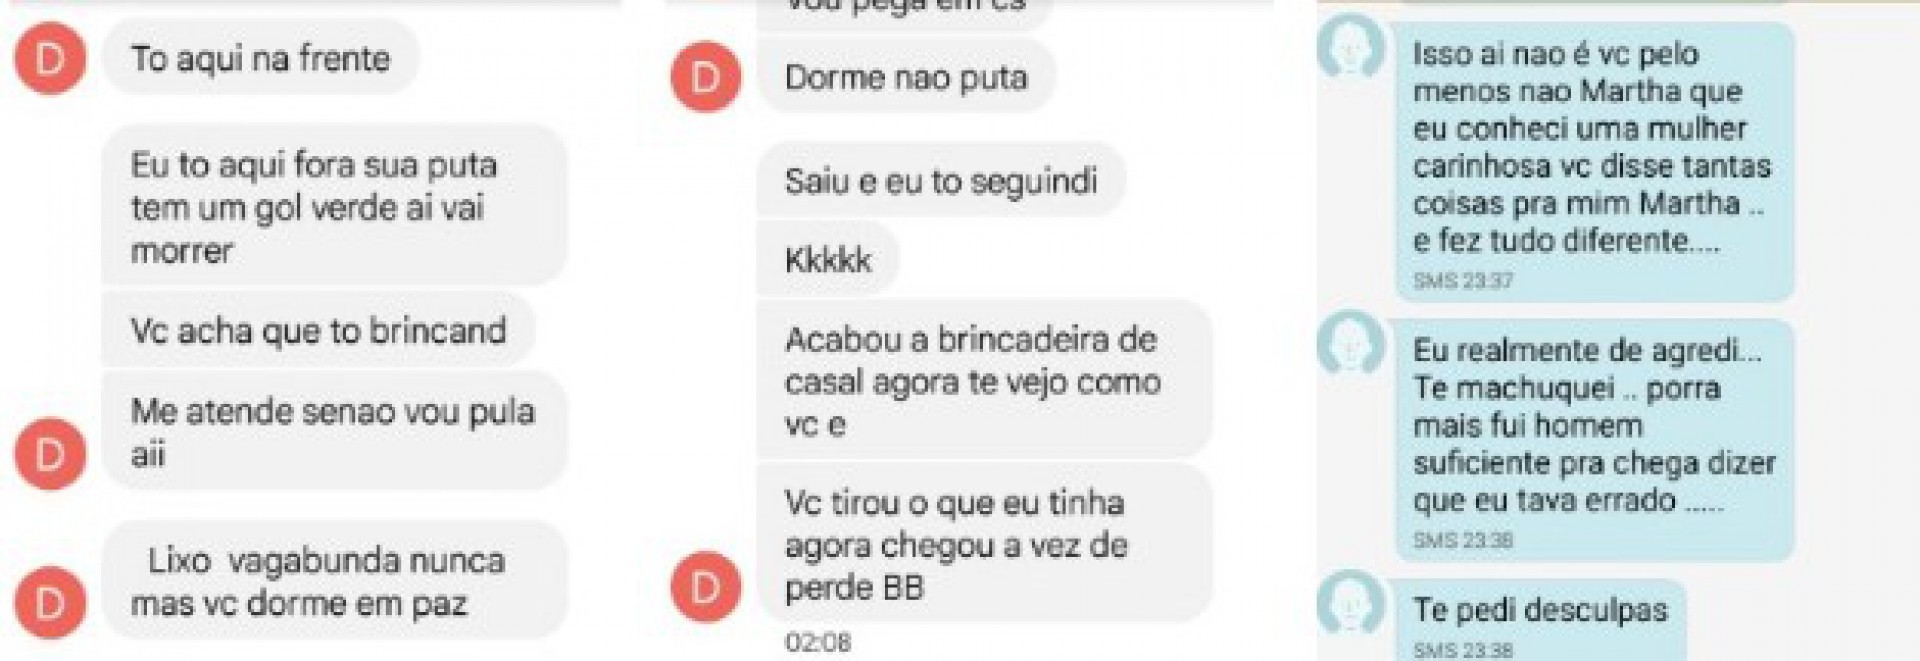 Troca de mensagens entre Tiago Martins e Martha Macedo, o acusado de agressão e a vítima. - Ludmila Lopes (RC24h)